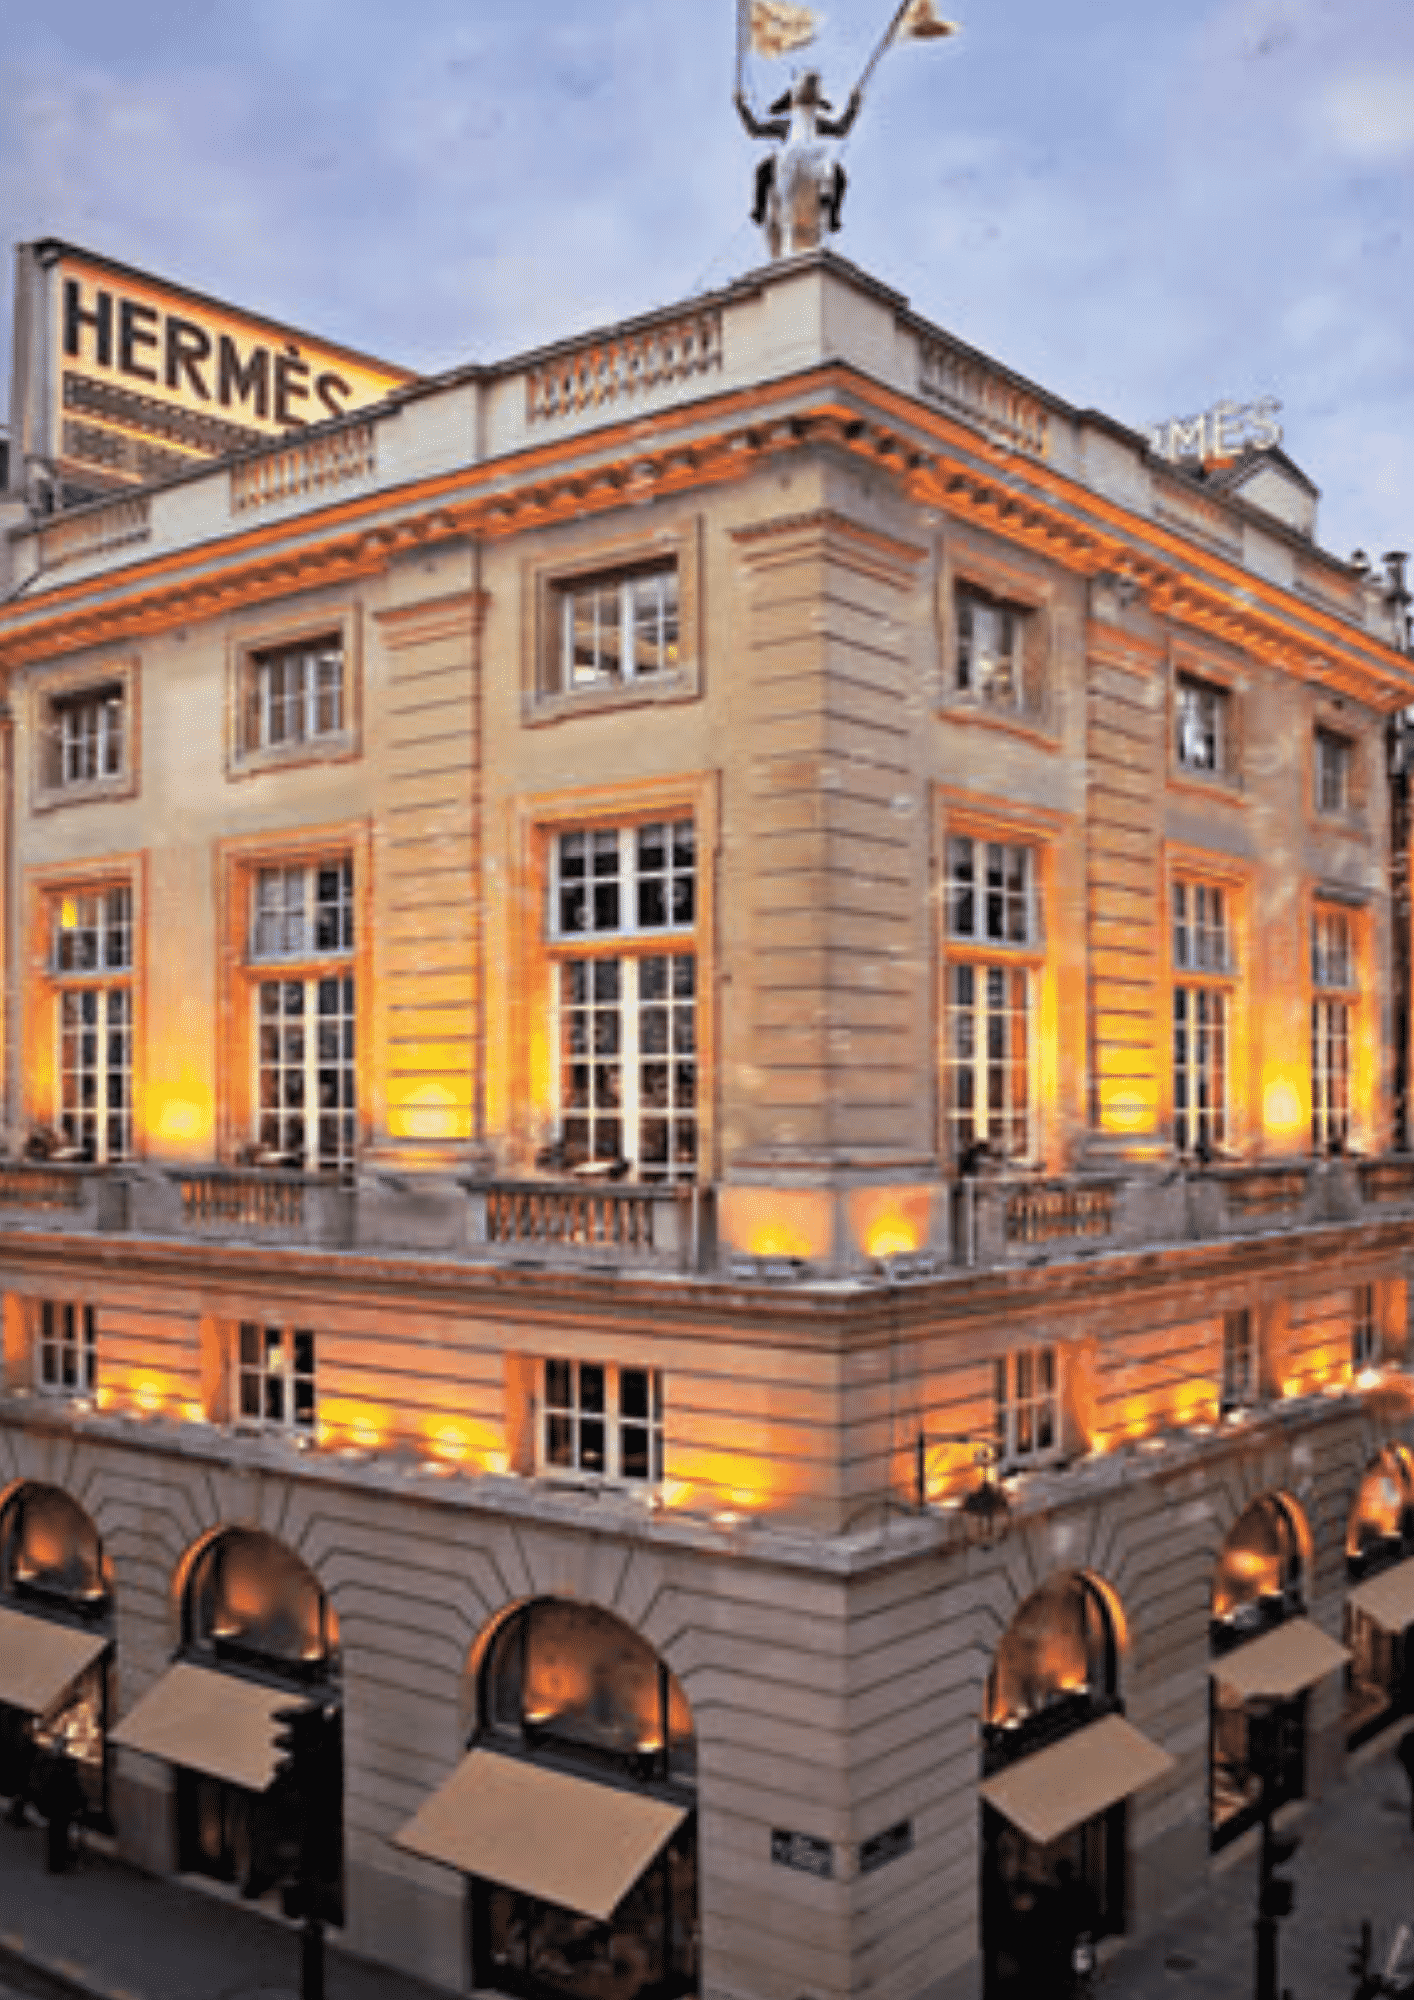 Storia di Hermès: il marchio sinonimo di lusso ed esclusività